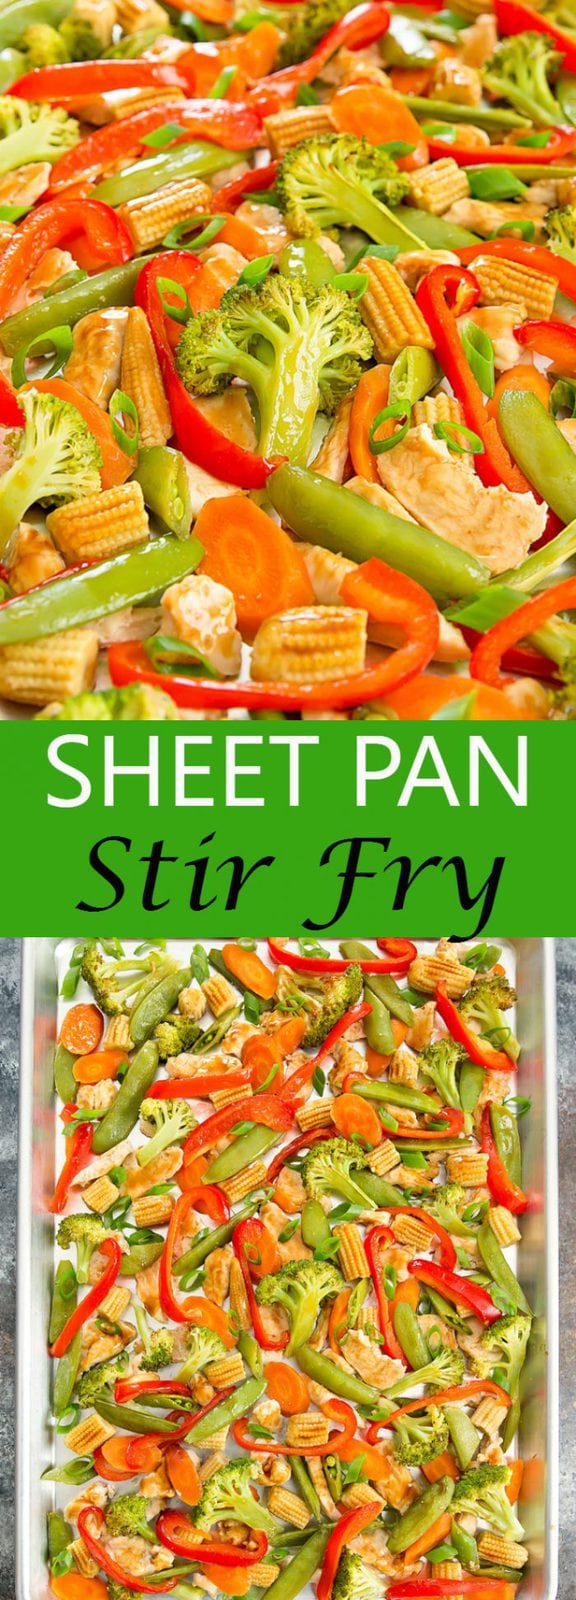 Sheet Pan Stir Fry